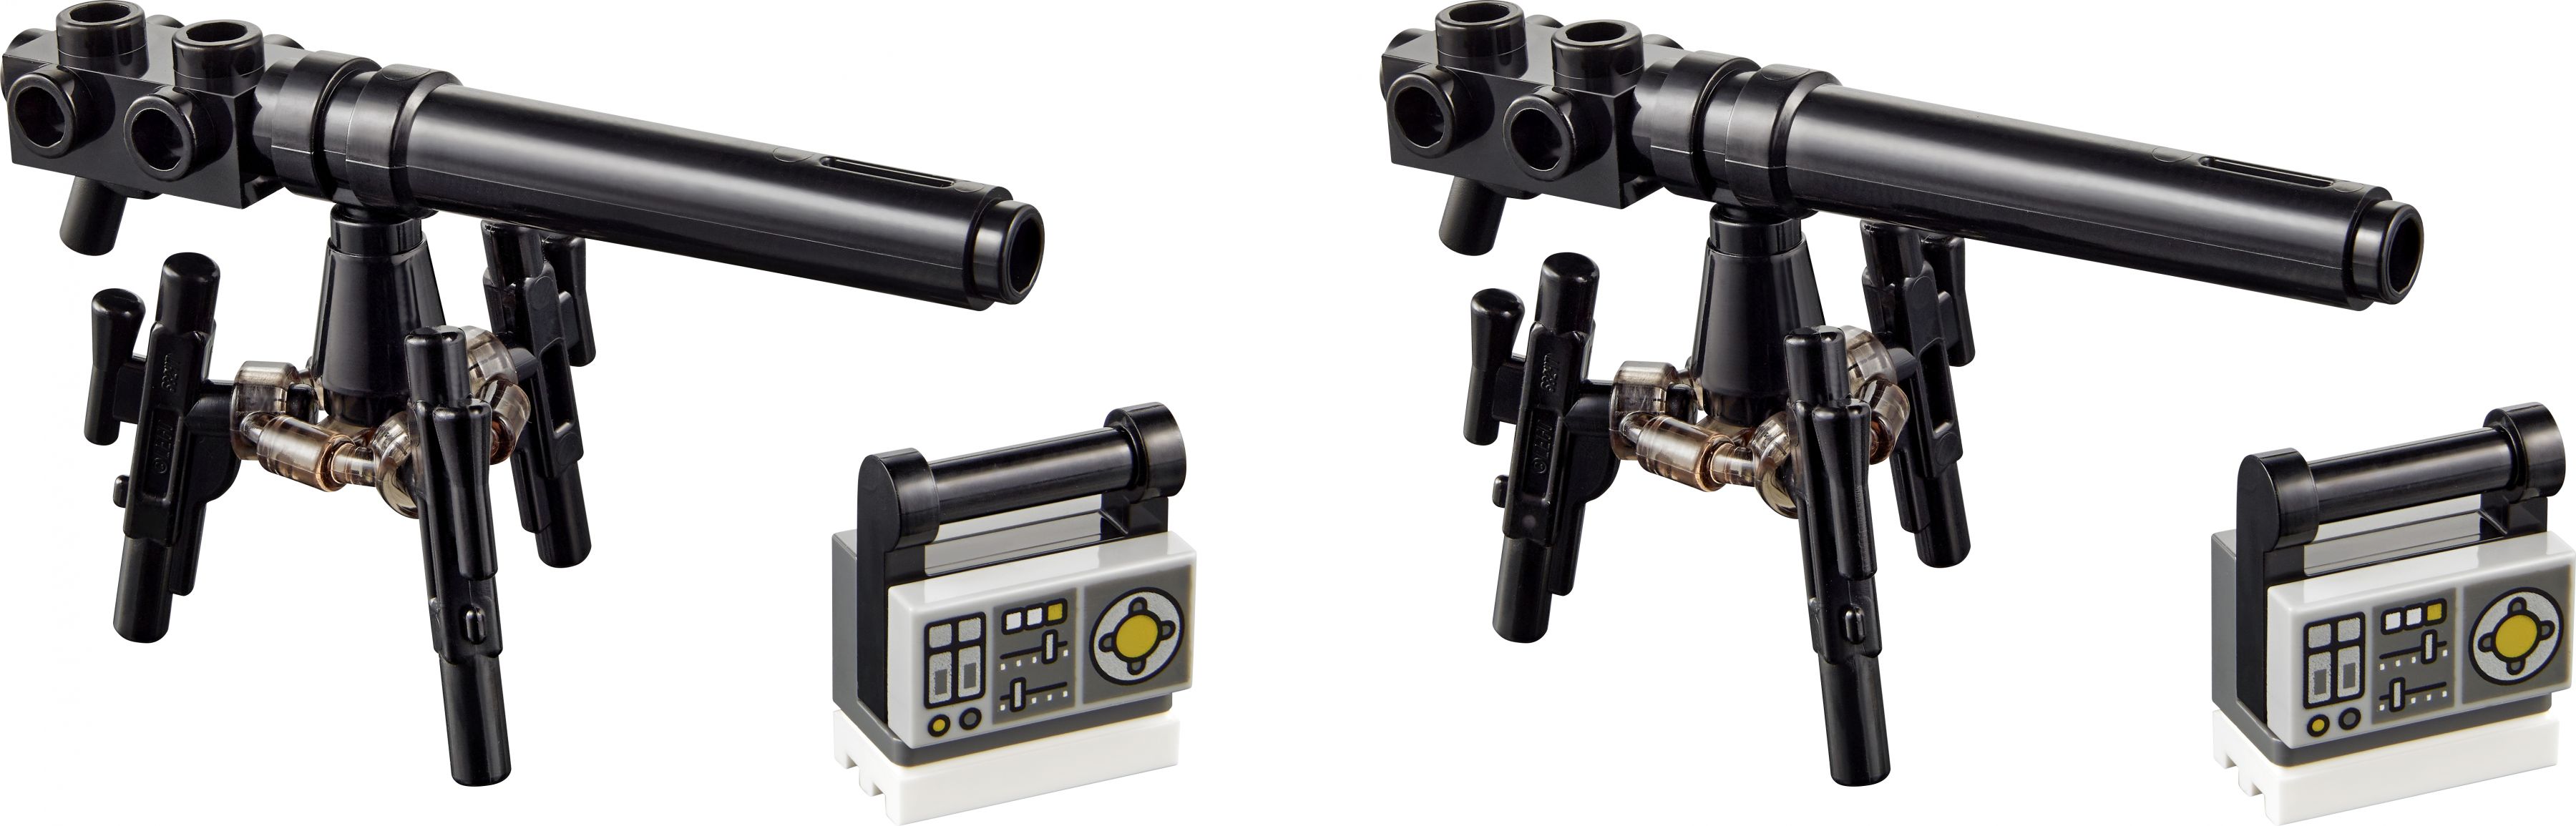 LEGO Star Wars 40557 Verteidigung von Hoth™ LEGO_40557_alt5.jpg